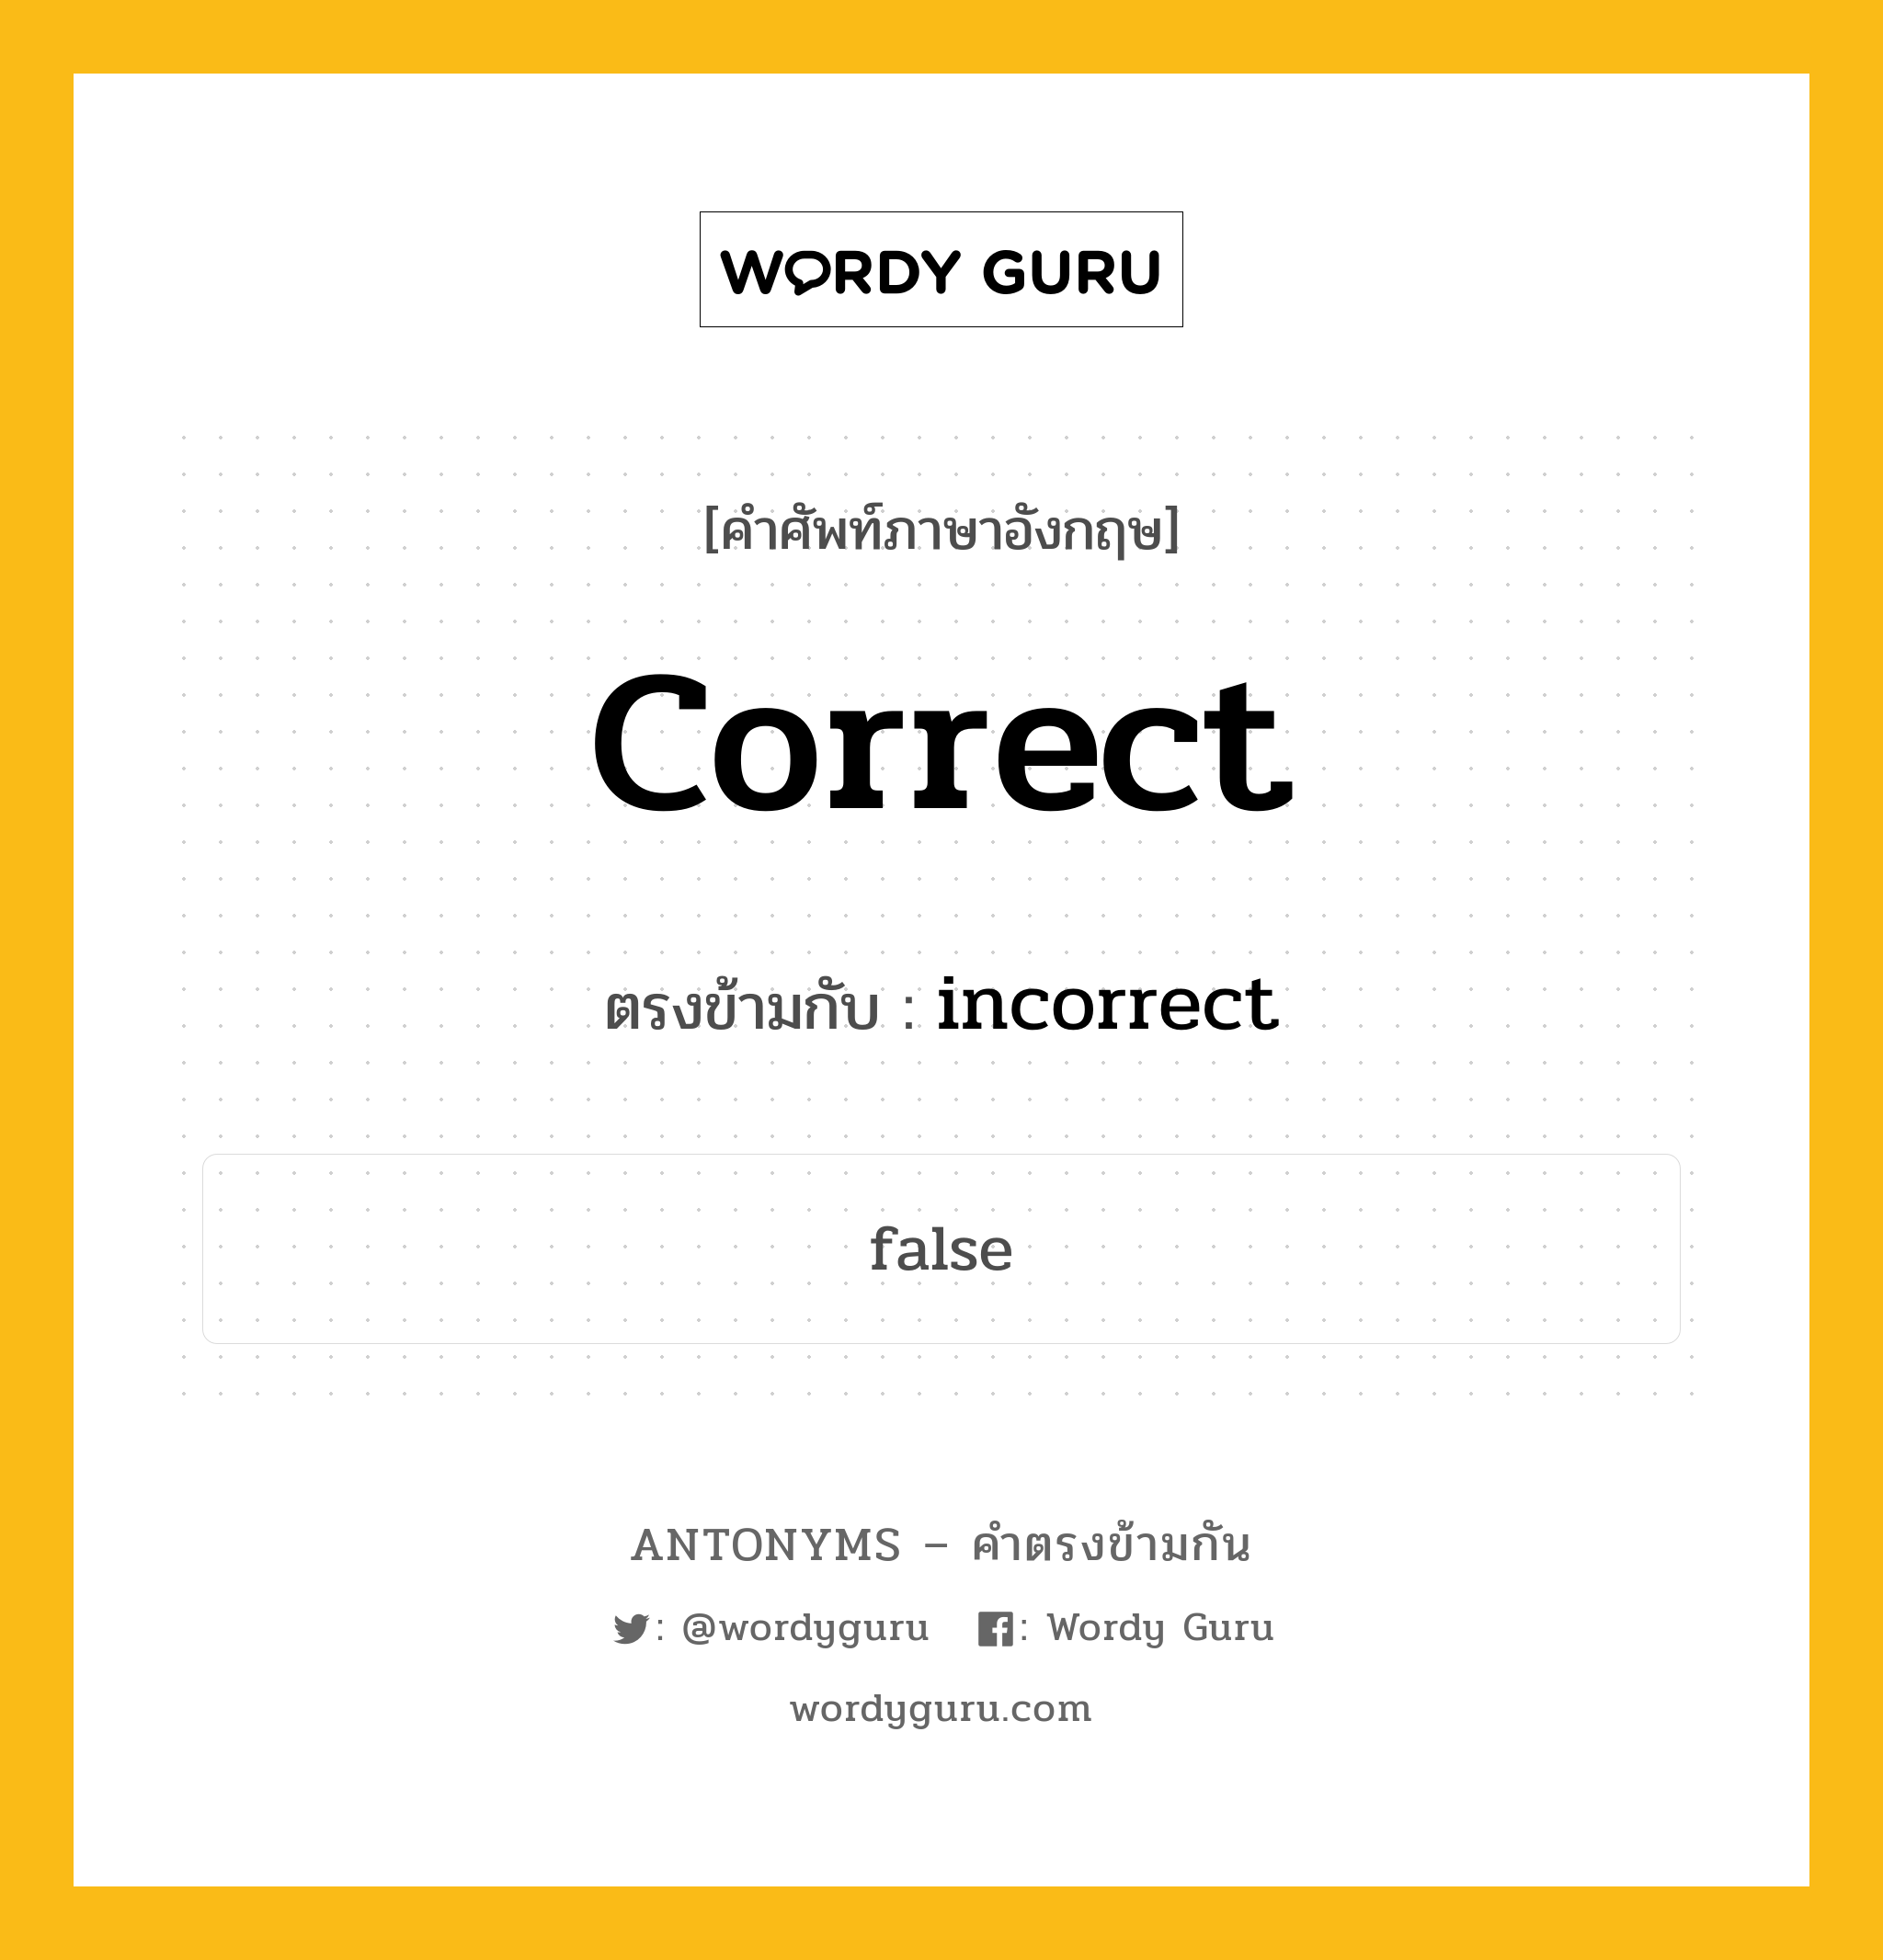 correct เป็นคำตรงข้ามกับคำไหนบ้าง?, คำศัพท์ภาษาอังกฤษ correct ตรงข้ามกับ incorrect หมวด incorrect